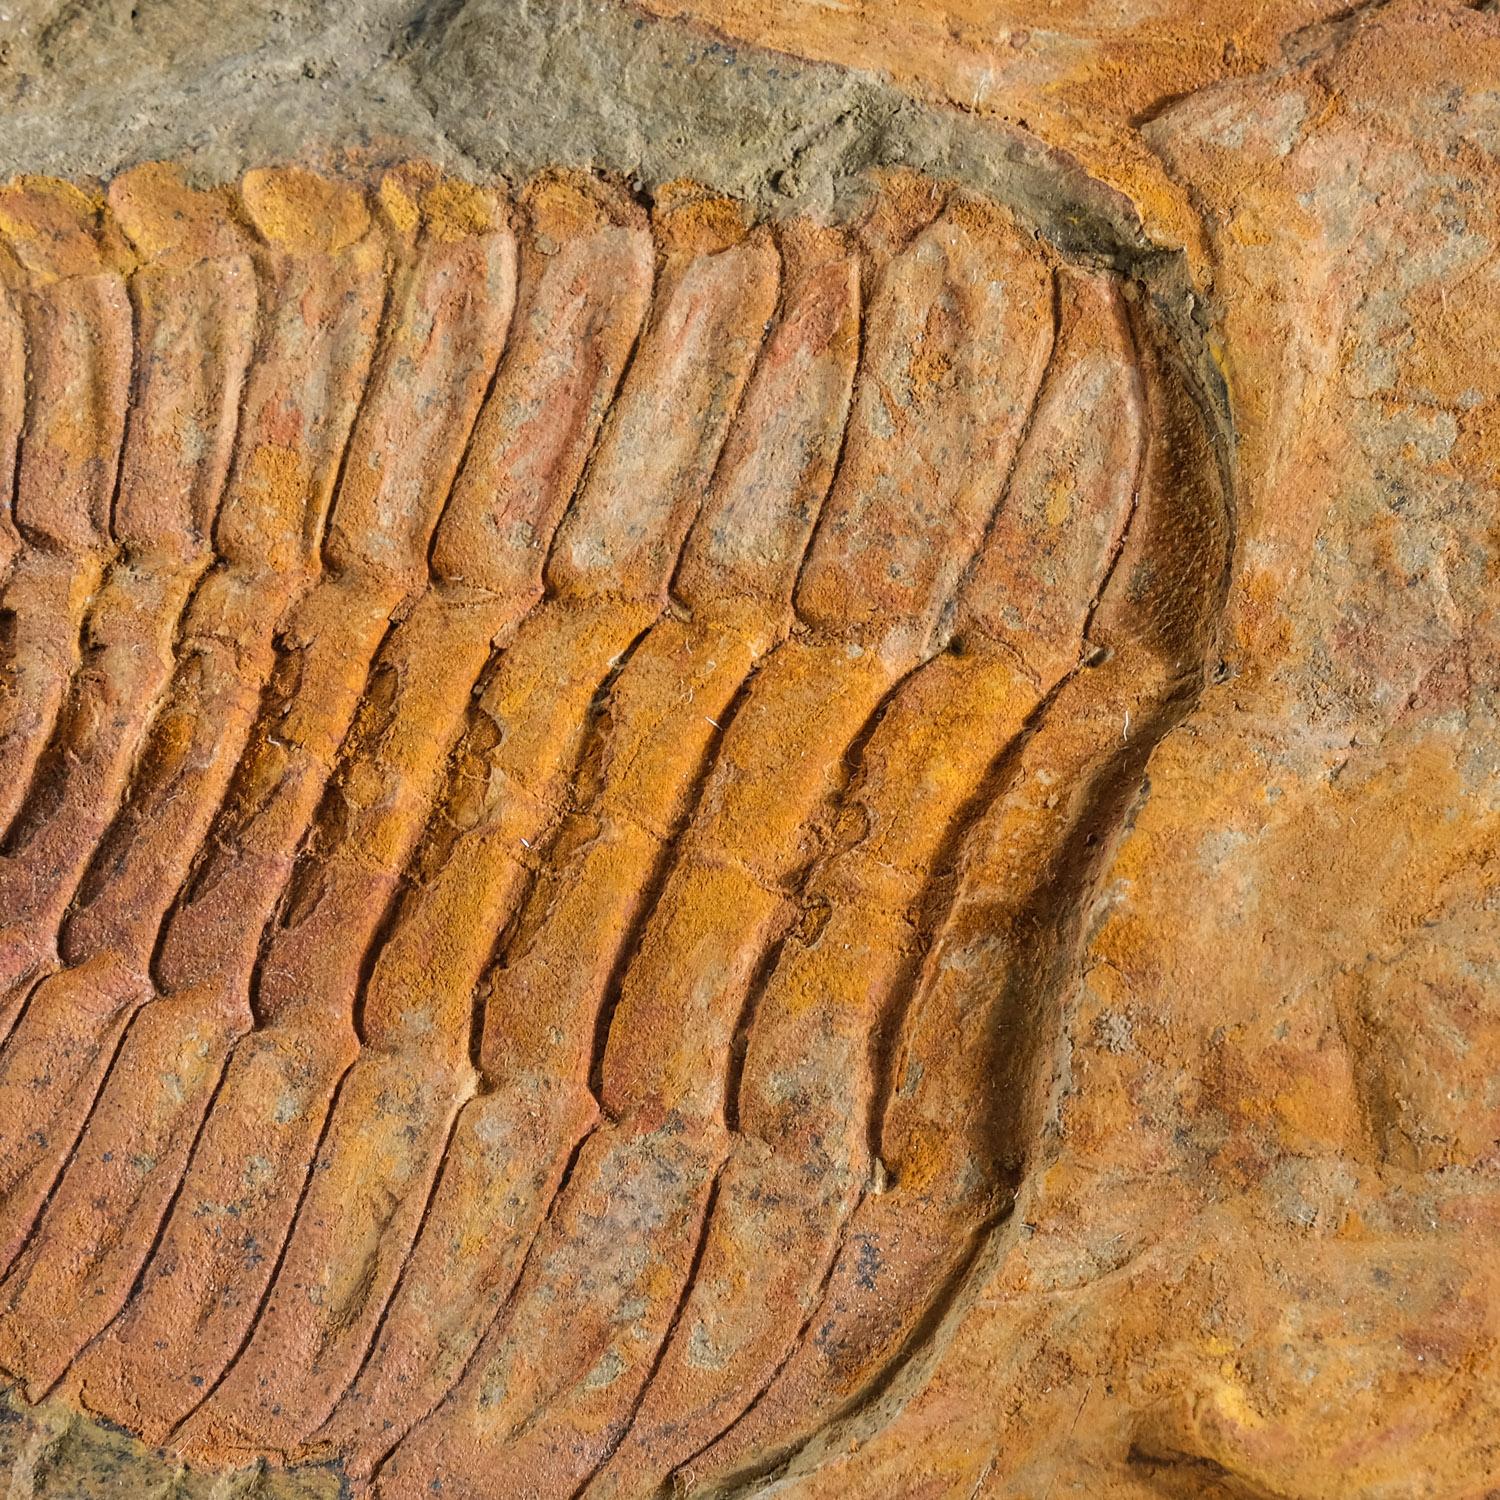 Ptychopariida ist eine große, heterogene Ordnung von Trilobiten, die einige der primitivsten bekannten Arten enthält. Die frühesten Arten kamen in der zweiten Hälfte des Unterkambriums vor. Trilobiten haben Gesichtsnähte, die entlang des Randes der